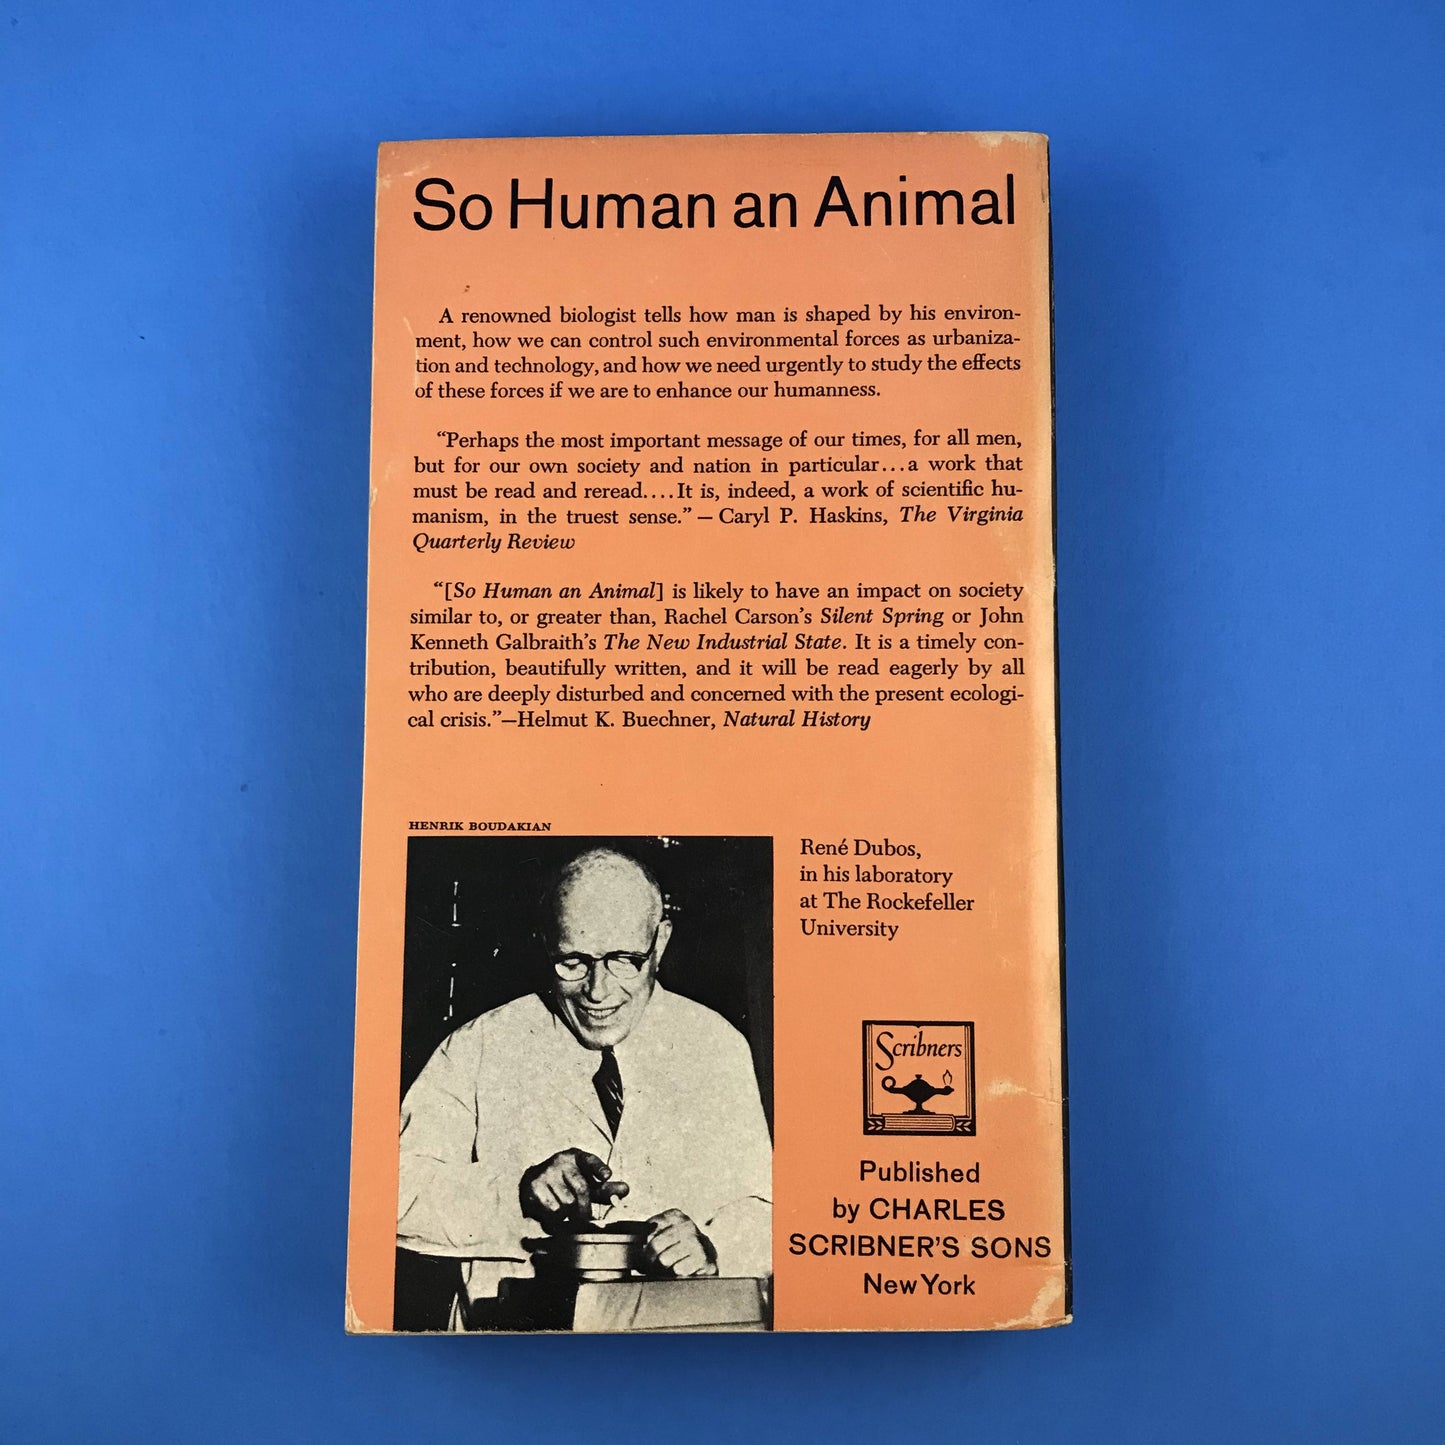 So Human an Animal